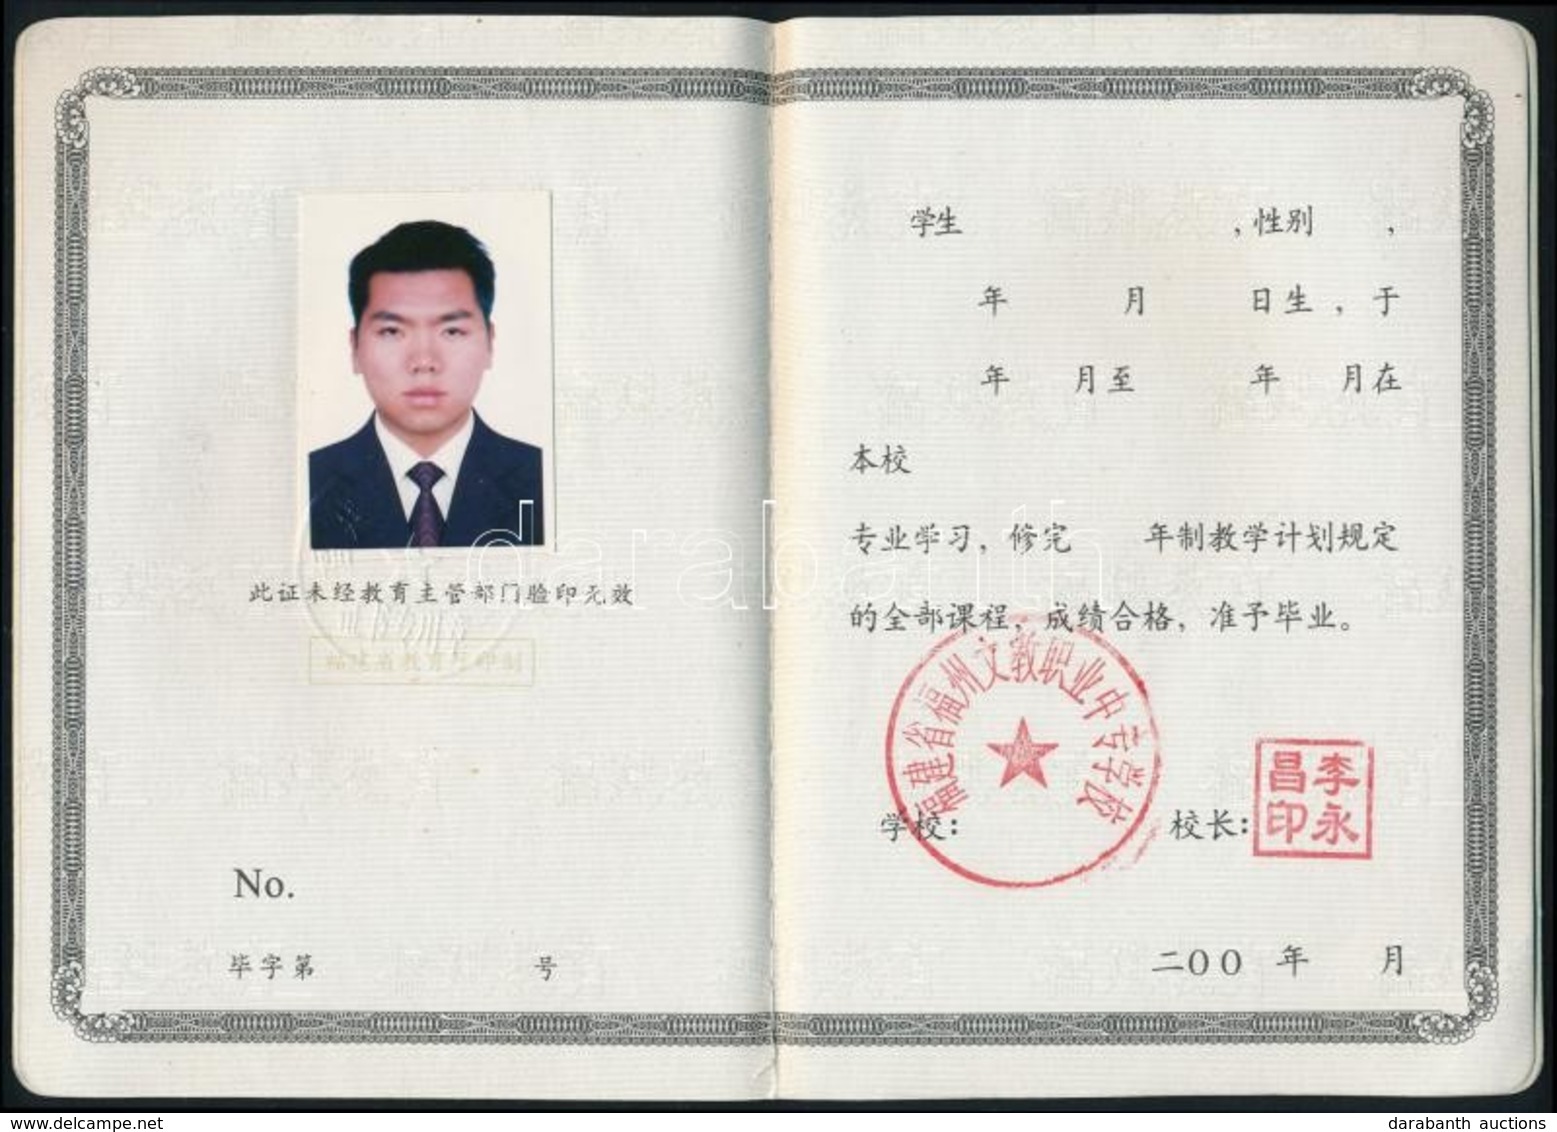 Cca 1998 Kínai Fényképes Iskolai Igazolvány - Unclassified